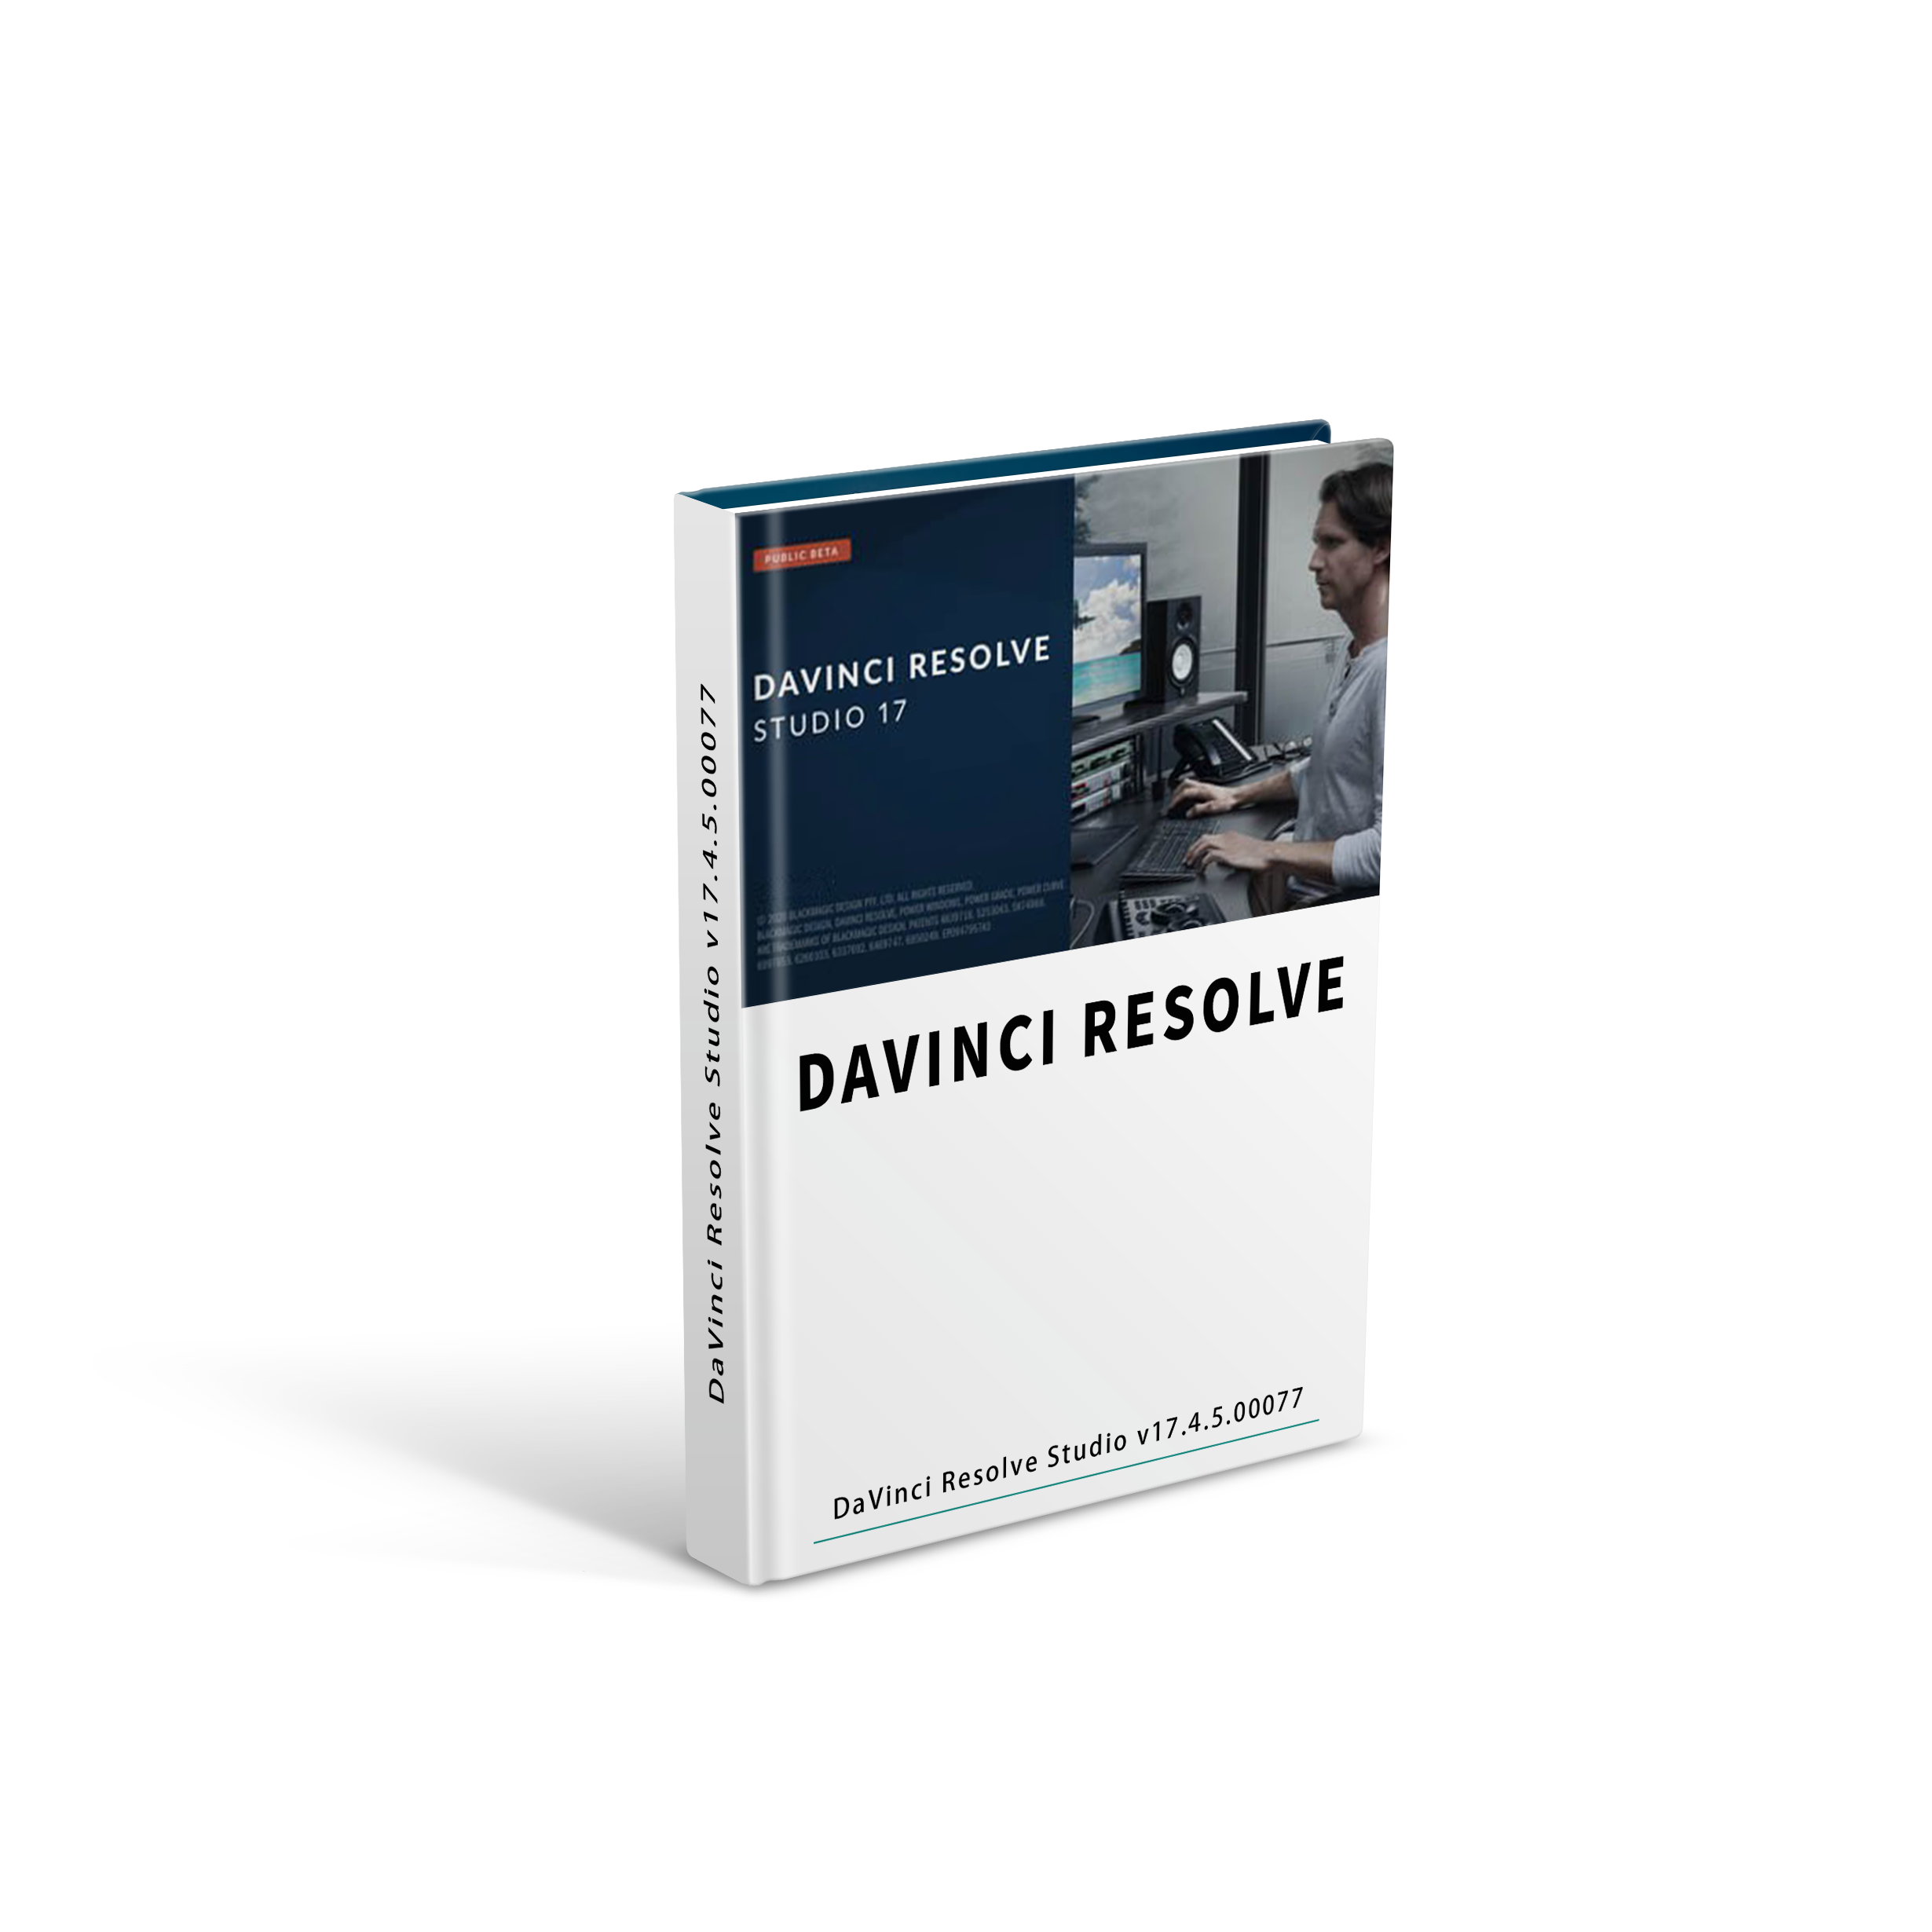 Blackmagic Design DaVinci Resolve Studio v17.4.5.0007 视频调色软件破解版